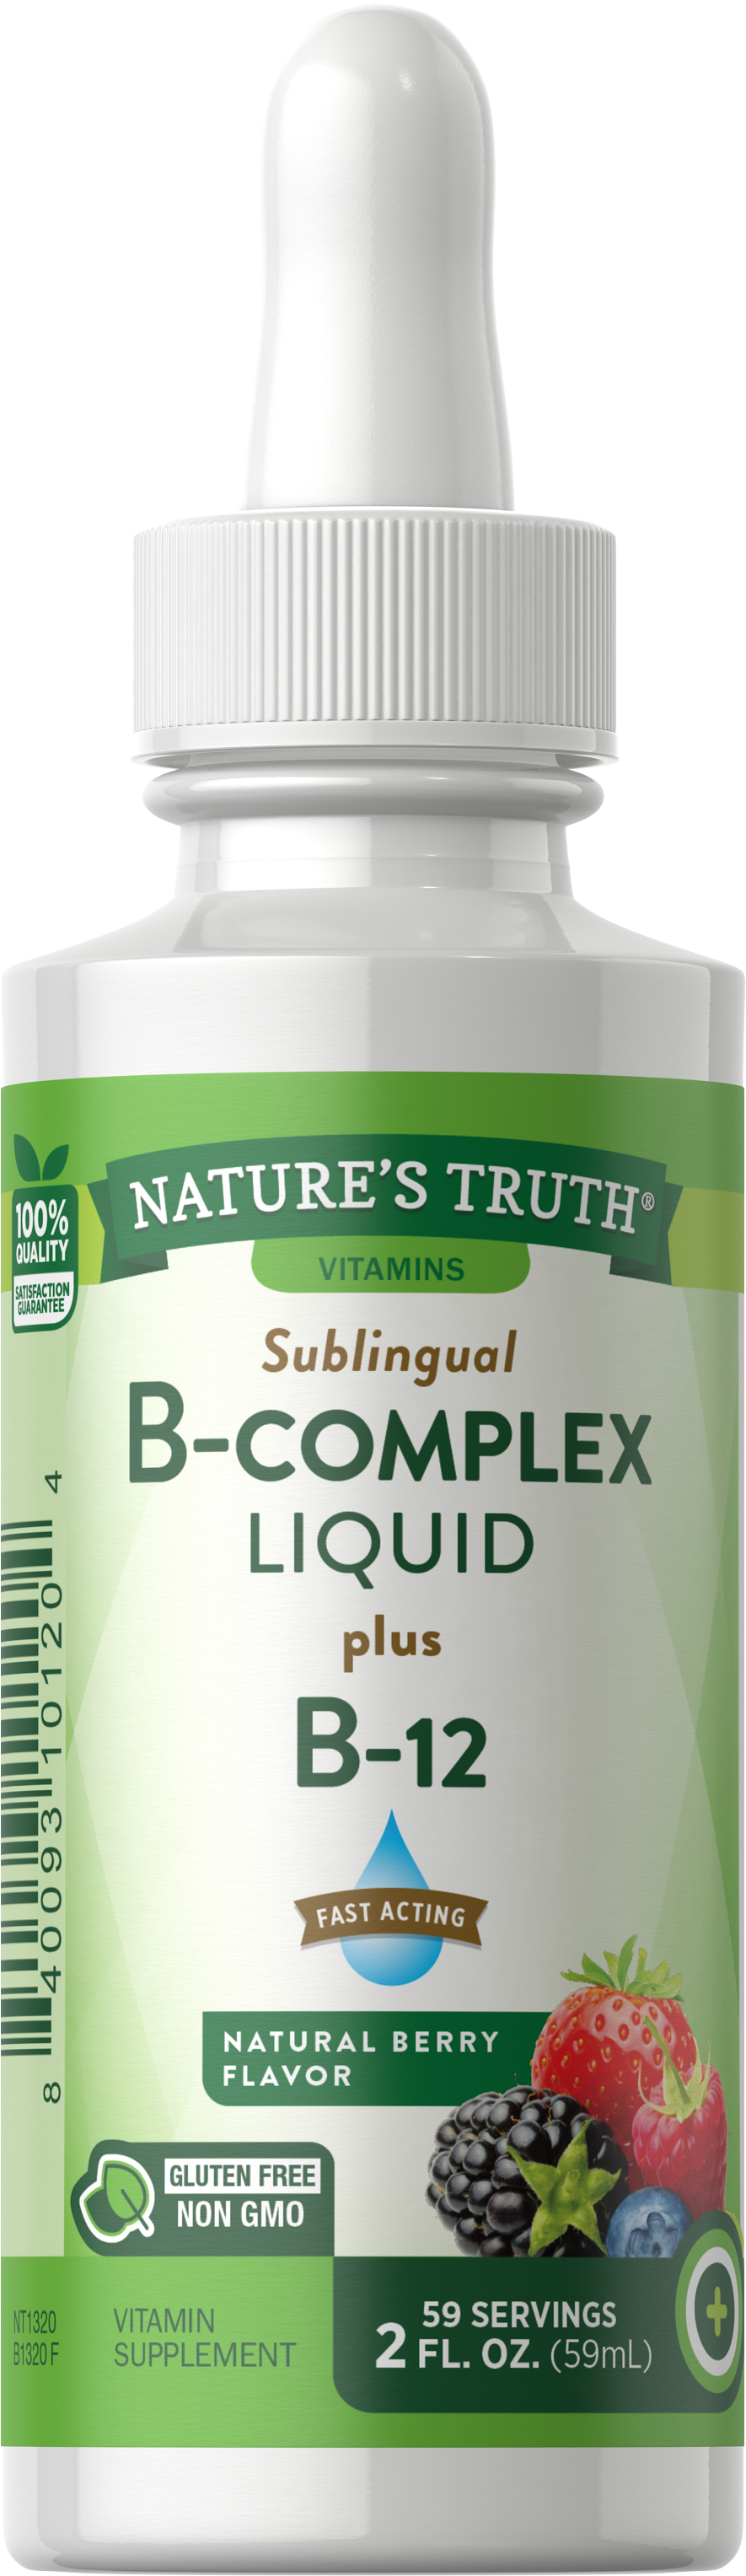 Vitamin B Complex Liquid | Natural Berry Flavor